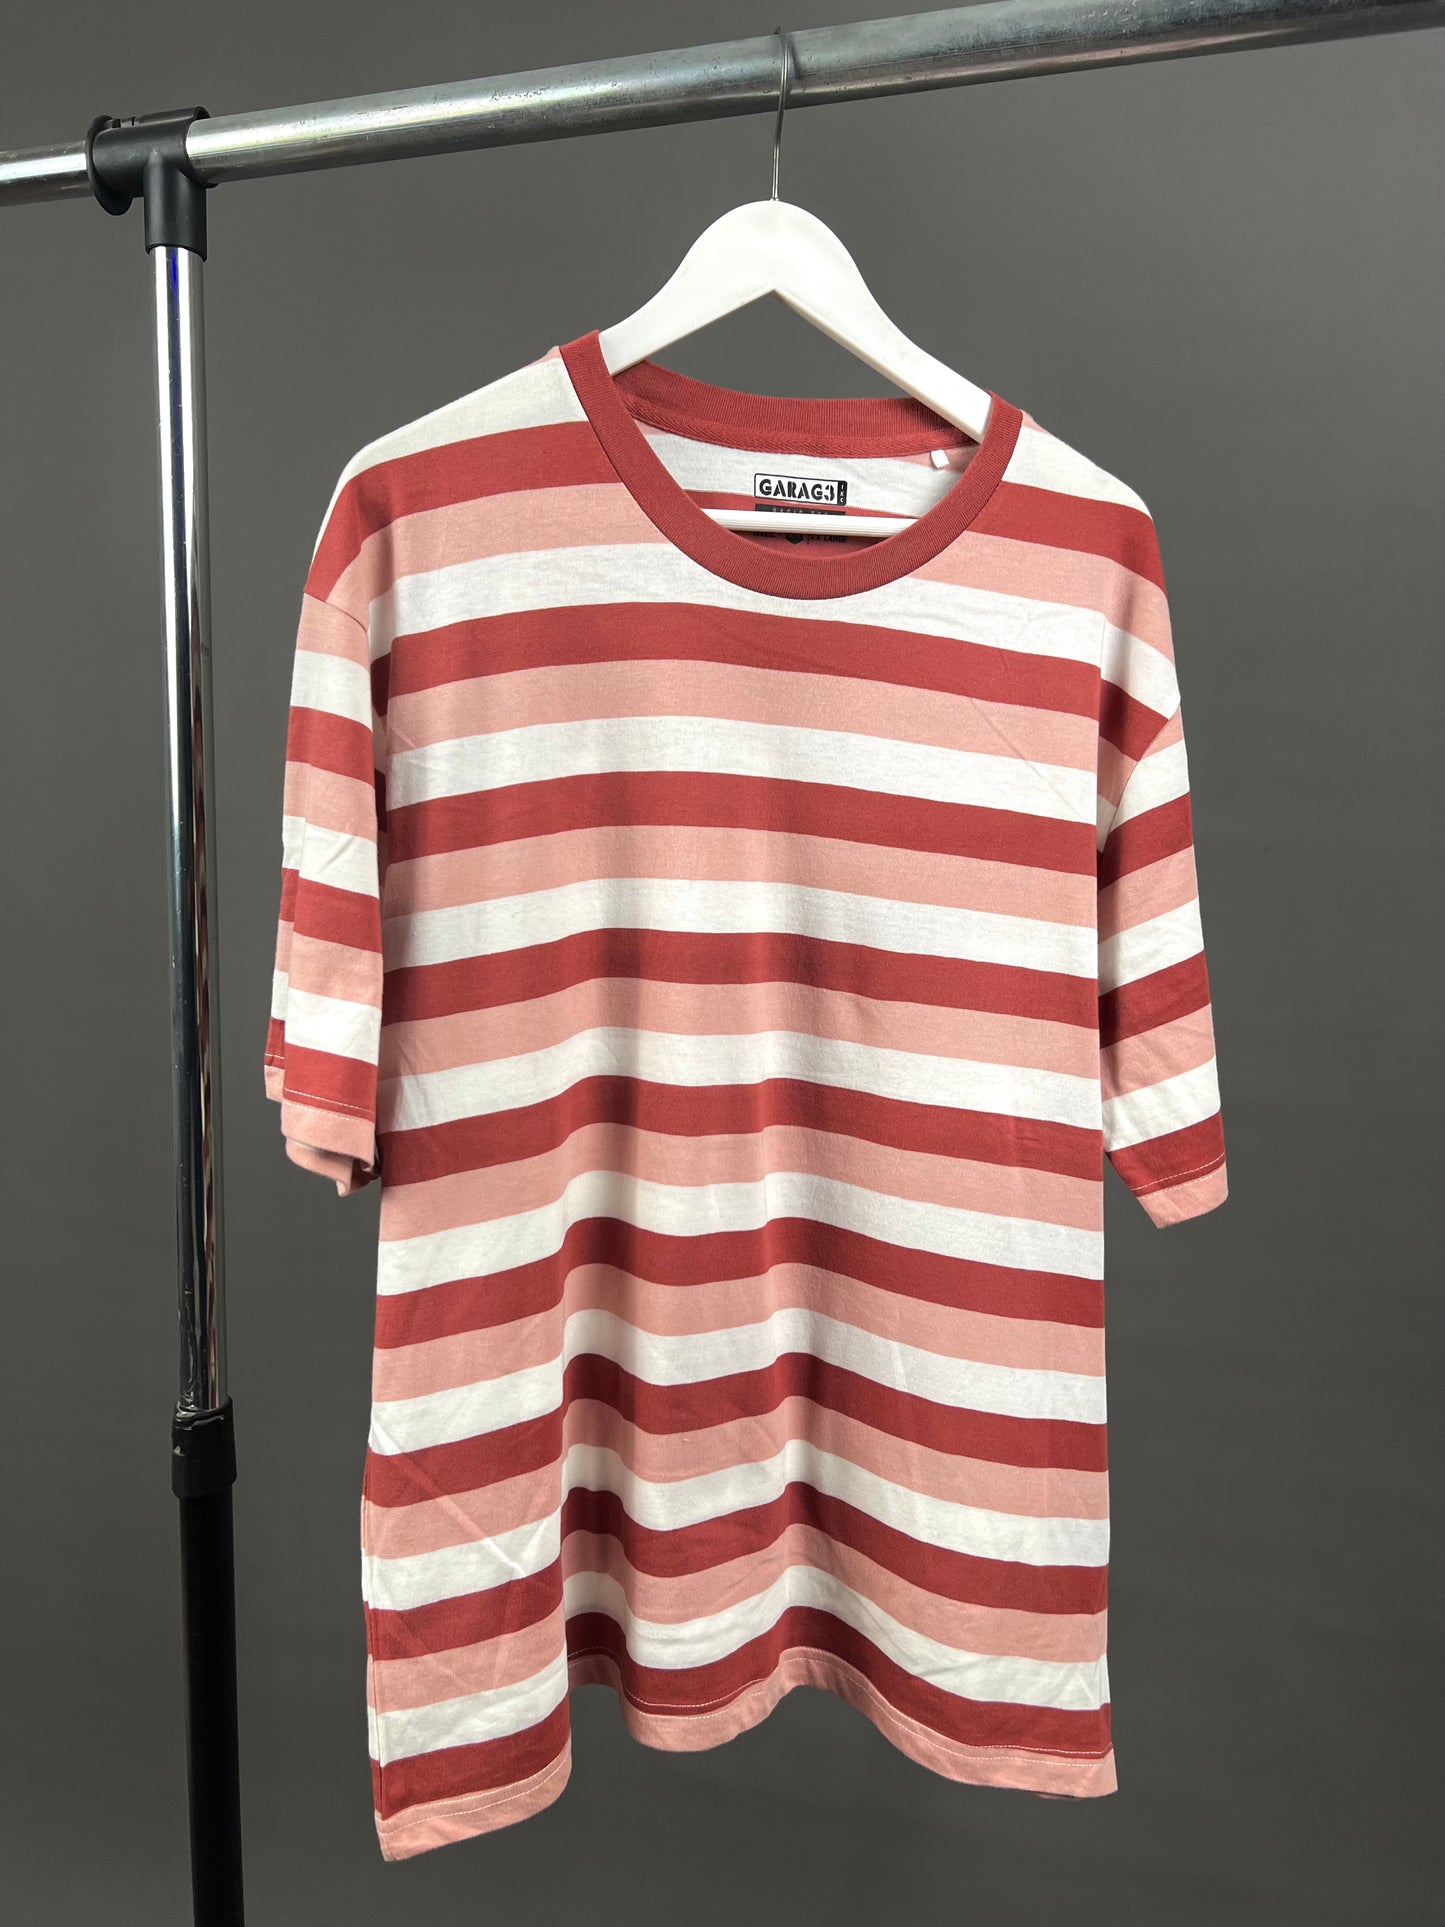 Garag3 horizontal Stripe T-shirt in red/pink/white